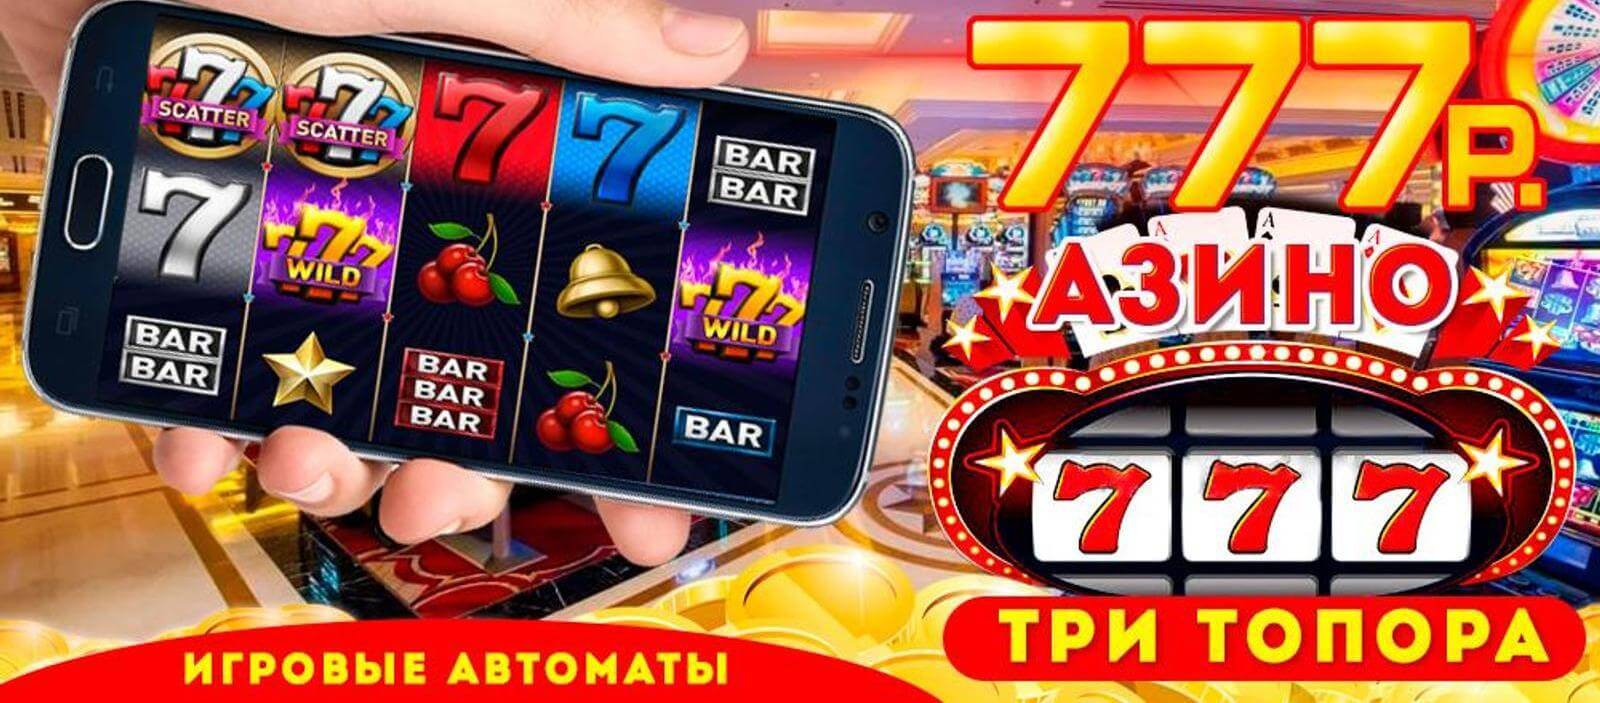 Azino777 отзывы 2020 играть и выигрывать рф online casino information powered by ipb